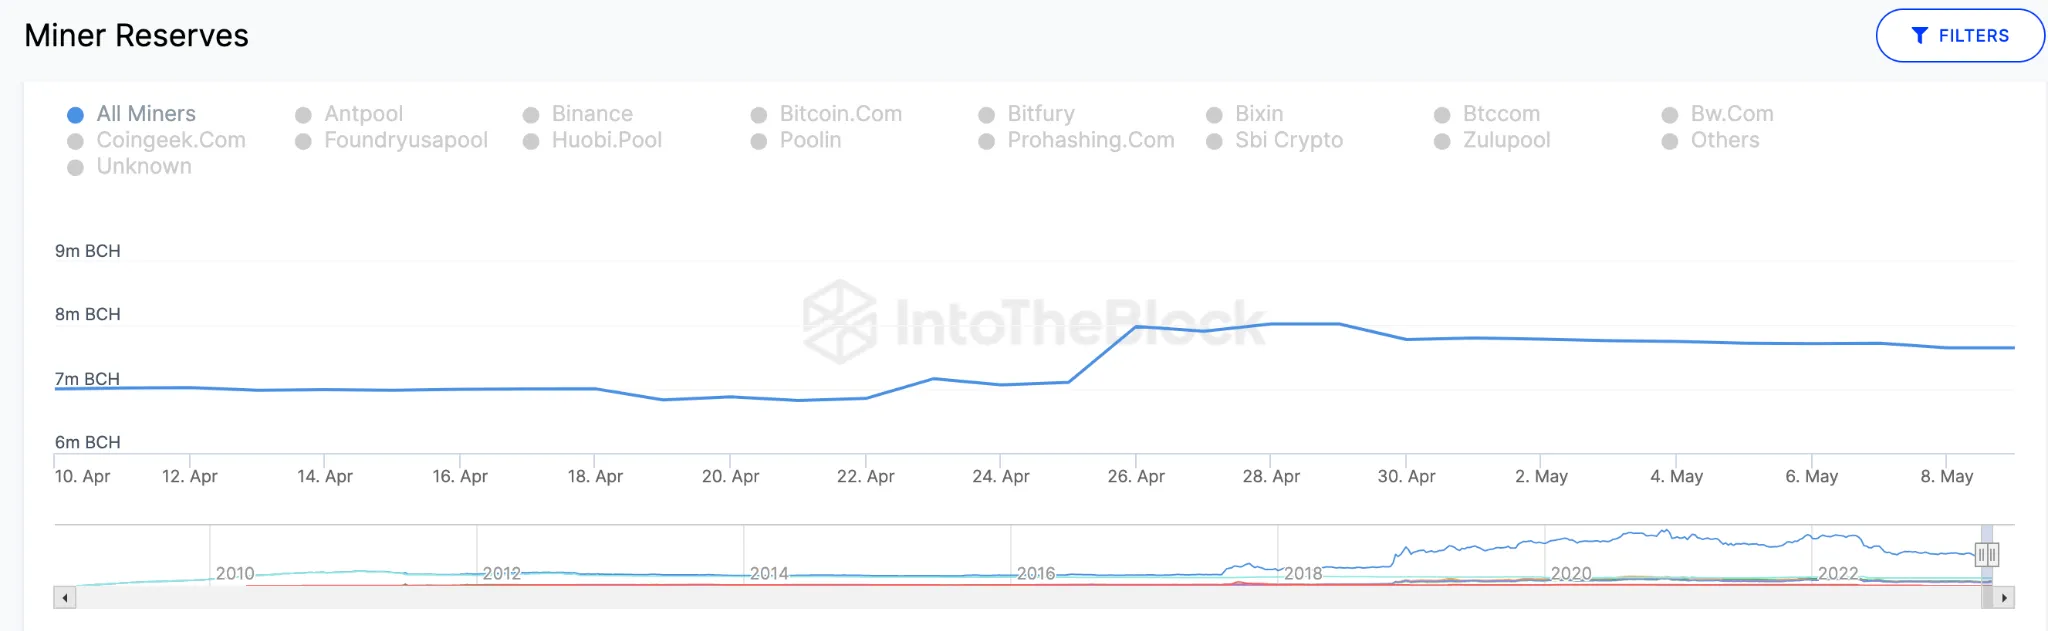 Predicción de precios de Bitcoin Cash (BCH) de mayo de 2023: datos de reservas mineras.